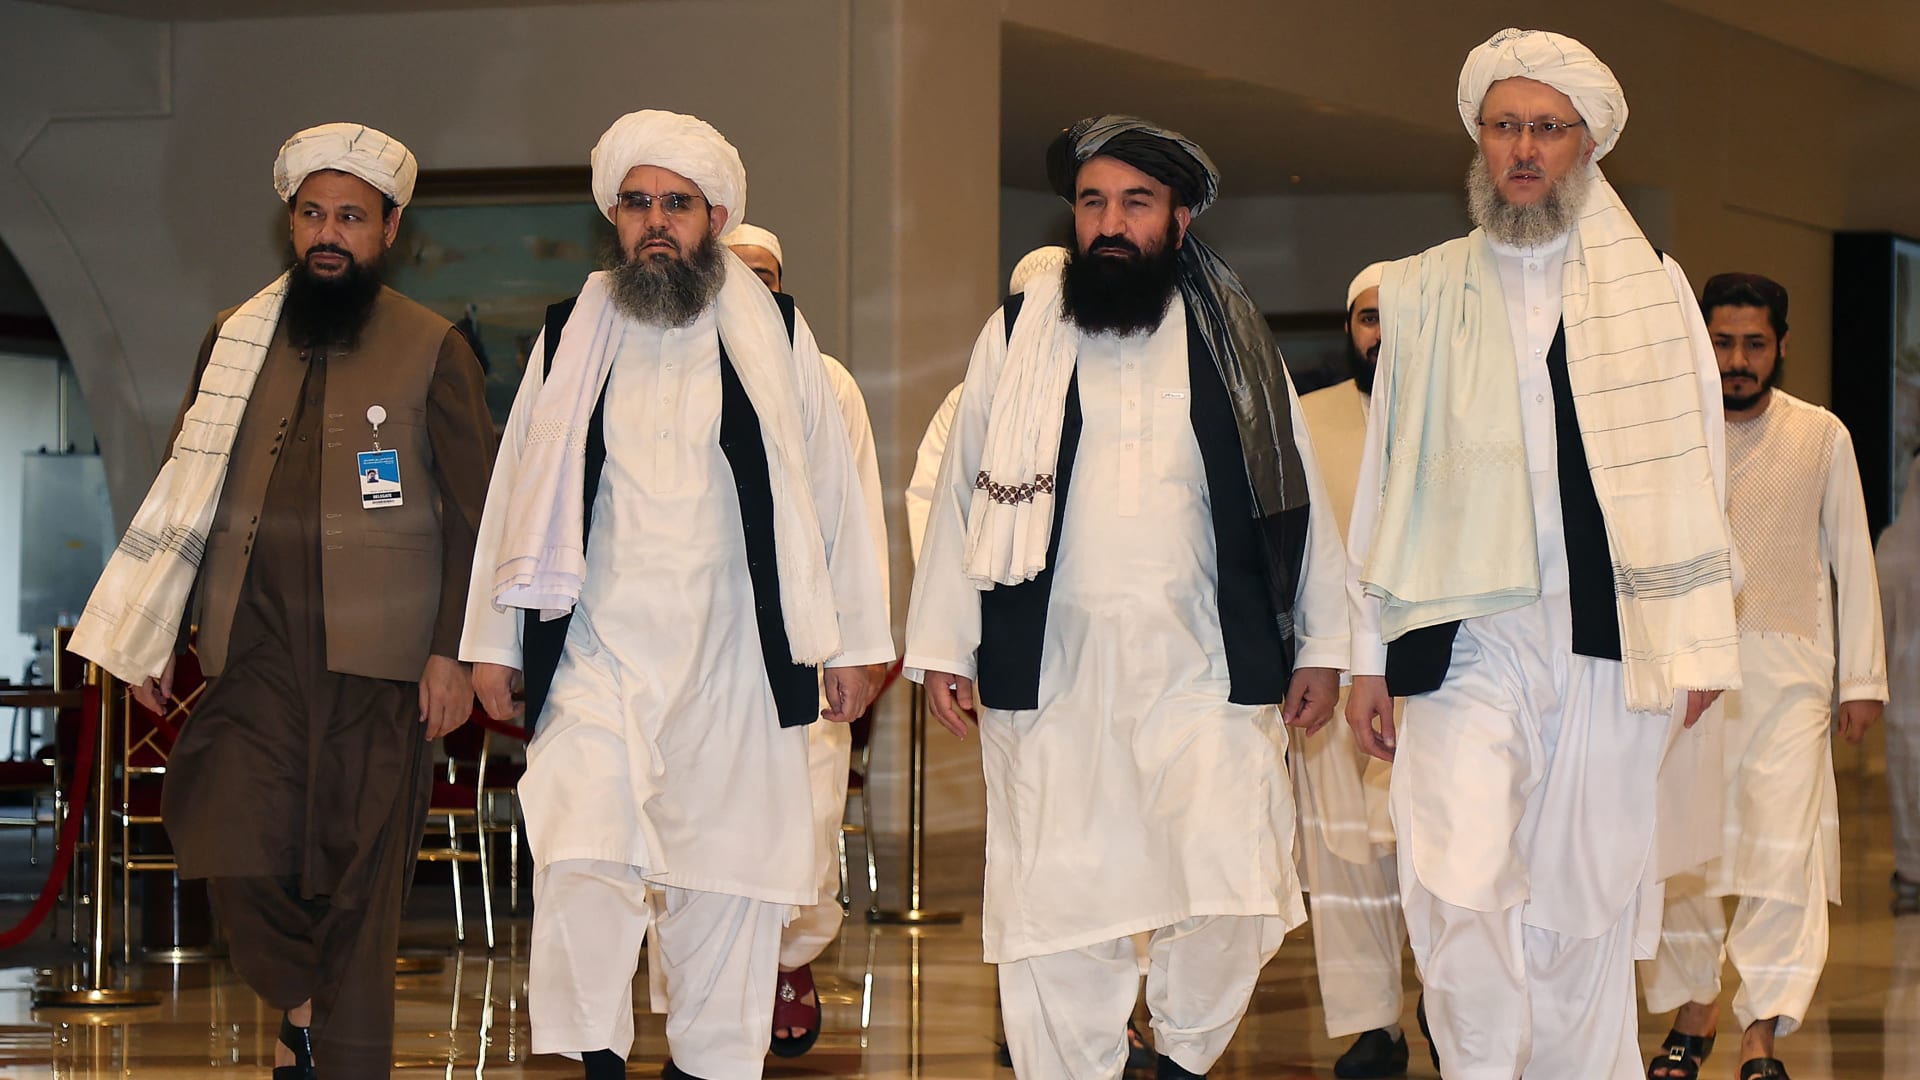 المتحدث باسم طالبان أولوياتنا الحفاظ على الأمن وحكومة إسلامية شاملة